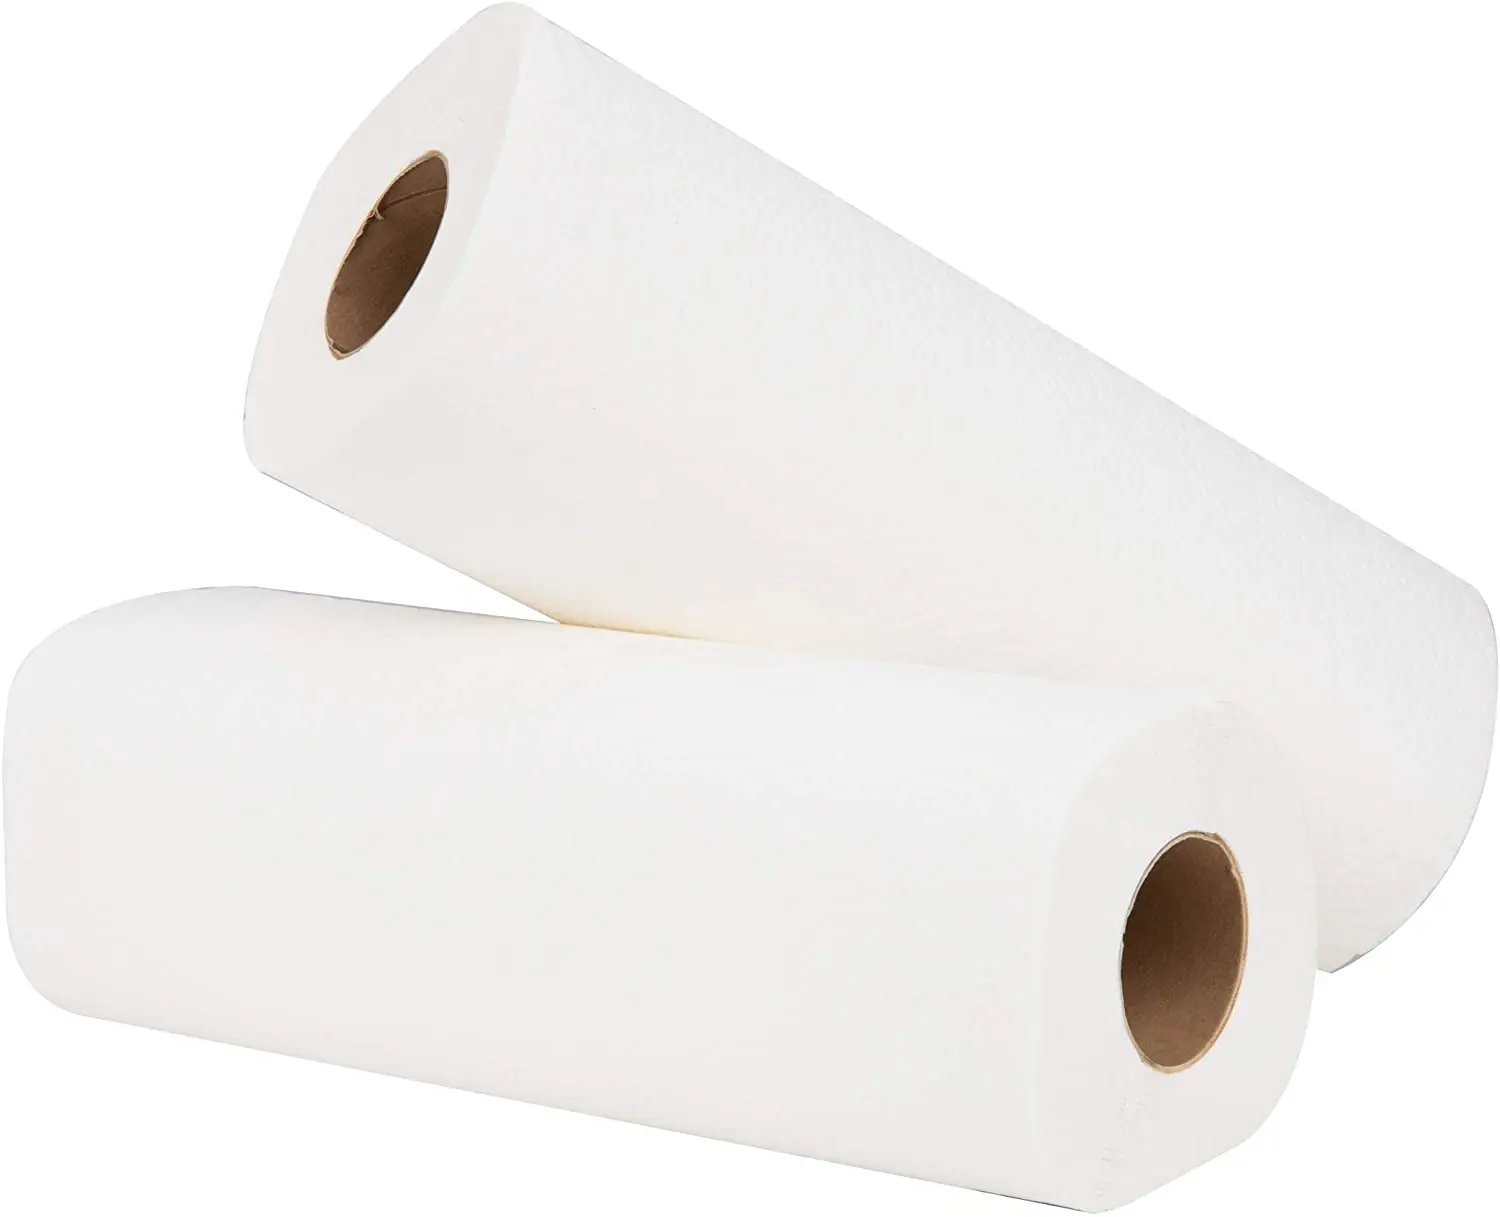 Offre Spéciale 2ply jetable cuisine rouleau papier serviette huile nettoyage papier de cuisine